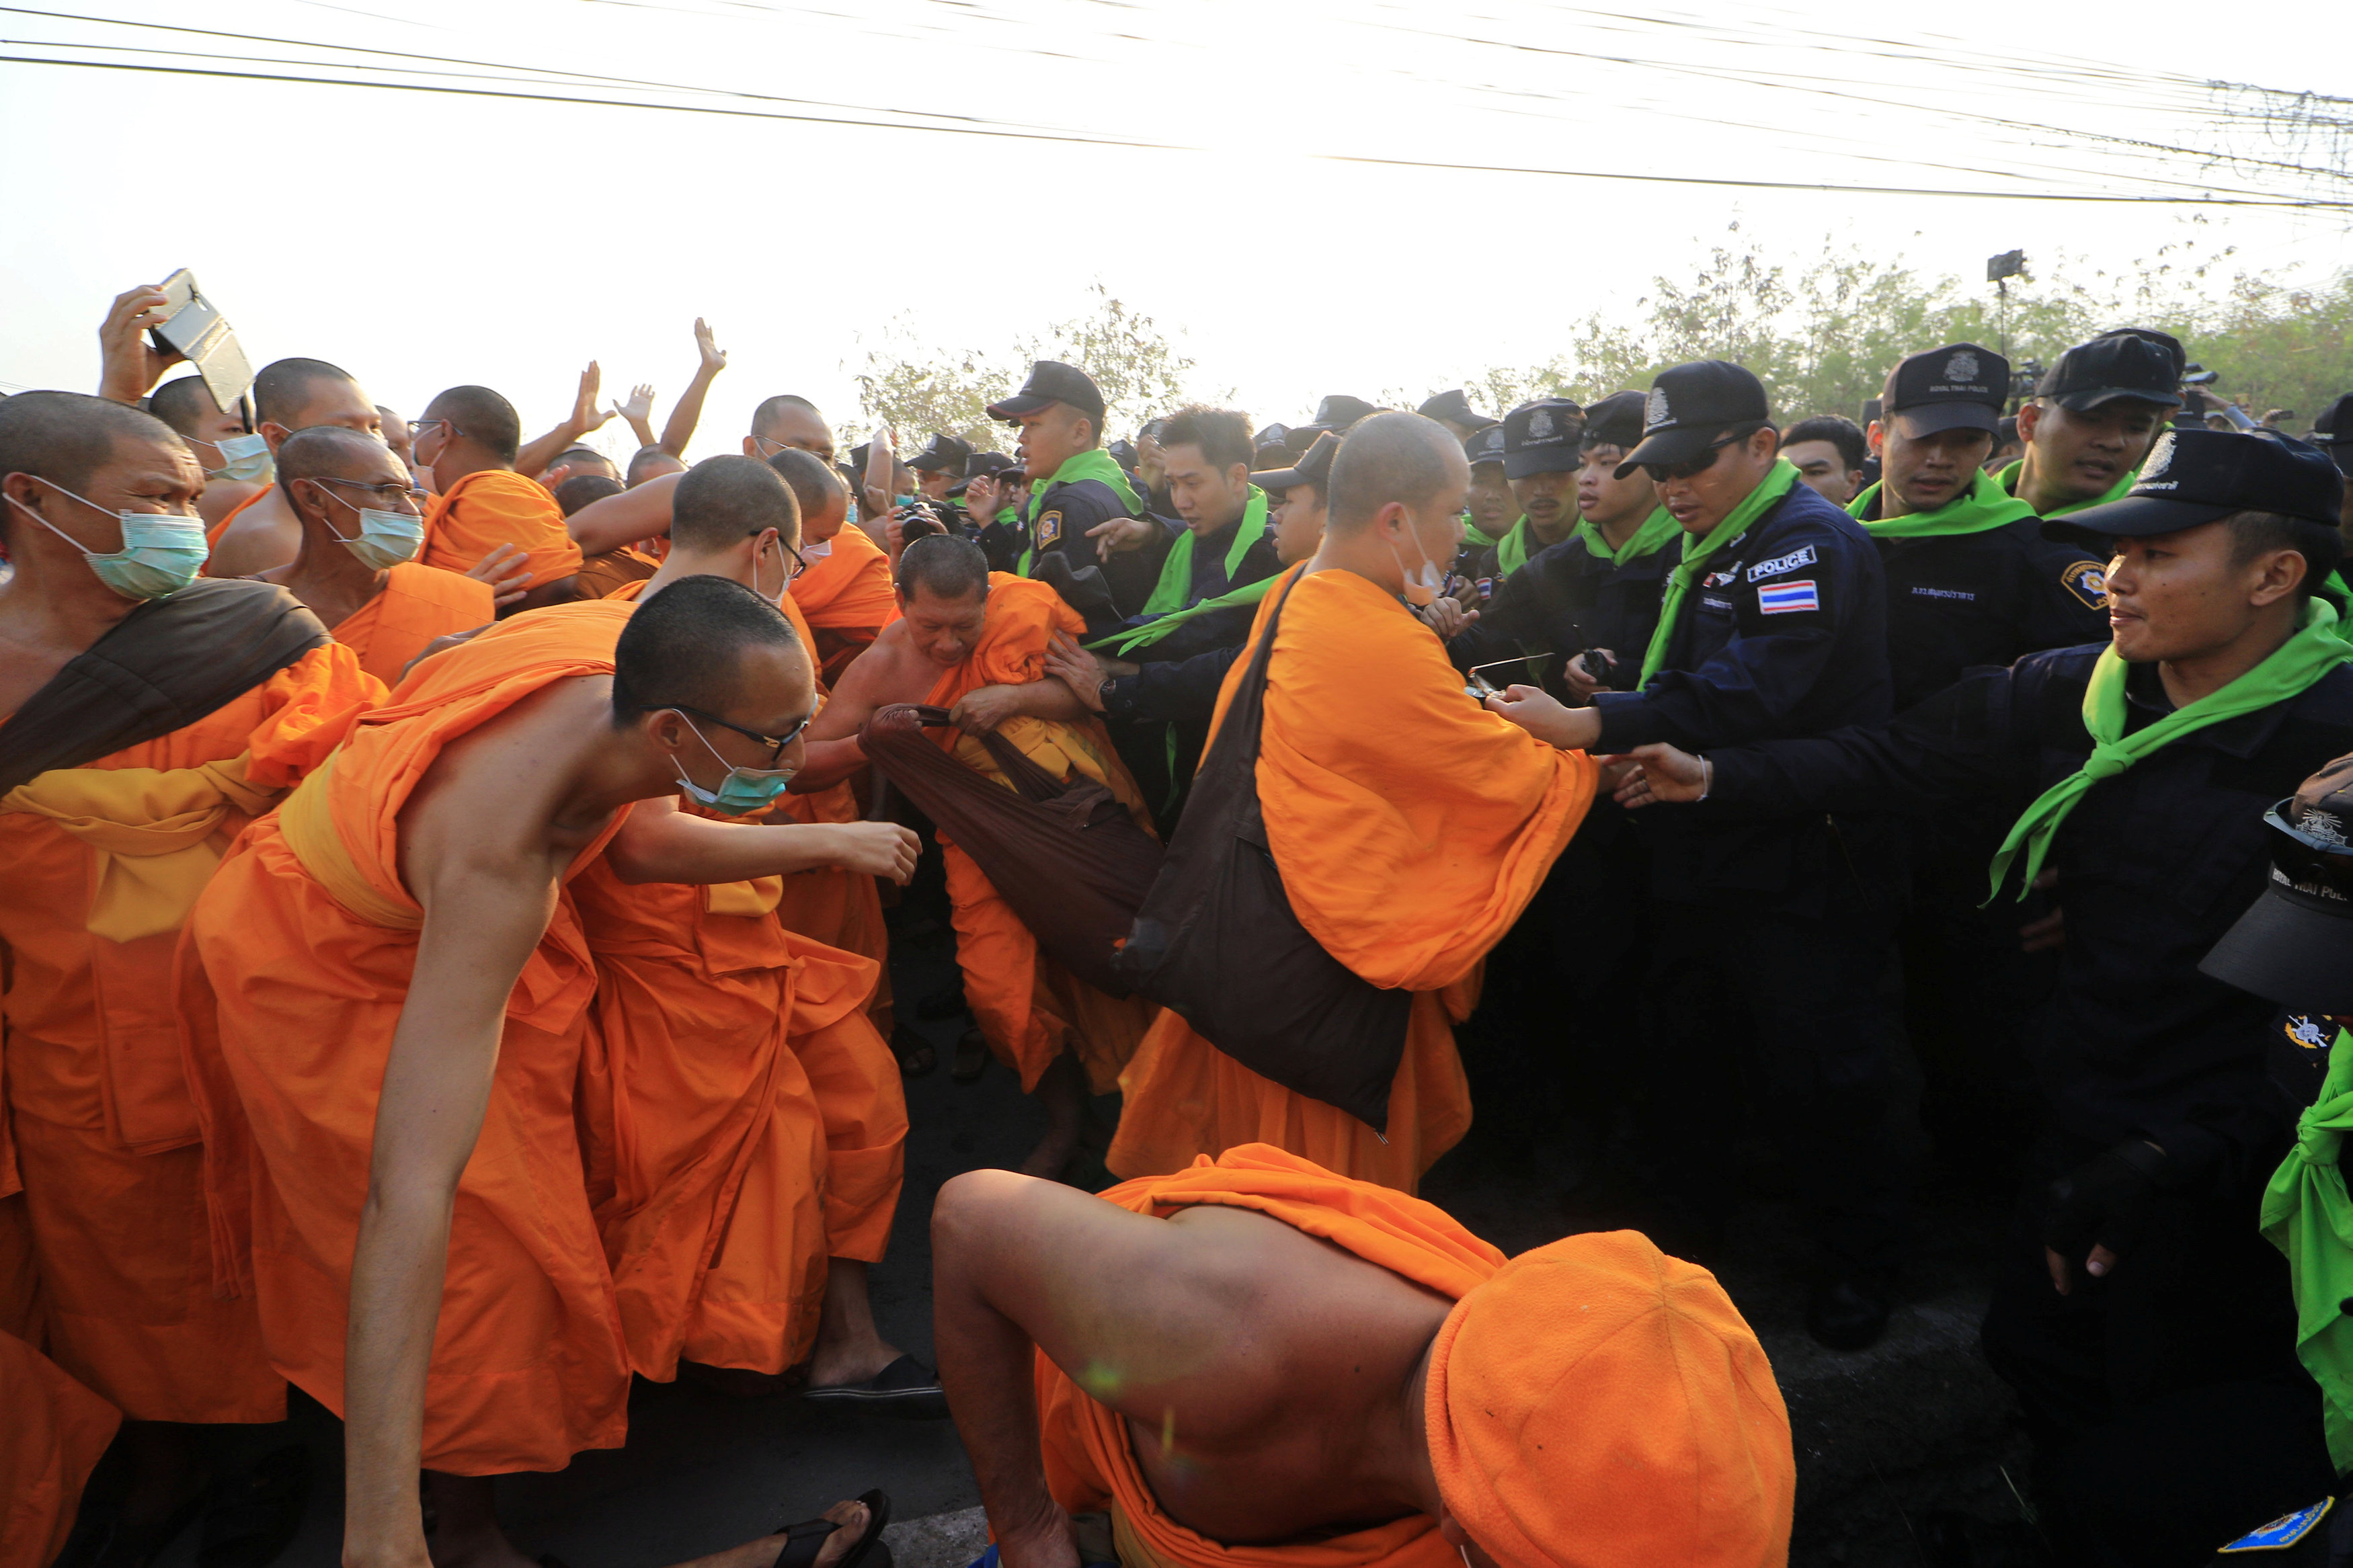 اشتباكات بمحيط معبد بوذى فى تايلاند خلال بحث الشرطة عن راهب متهم بغسيل أموال